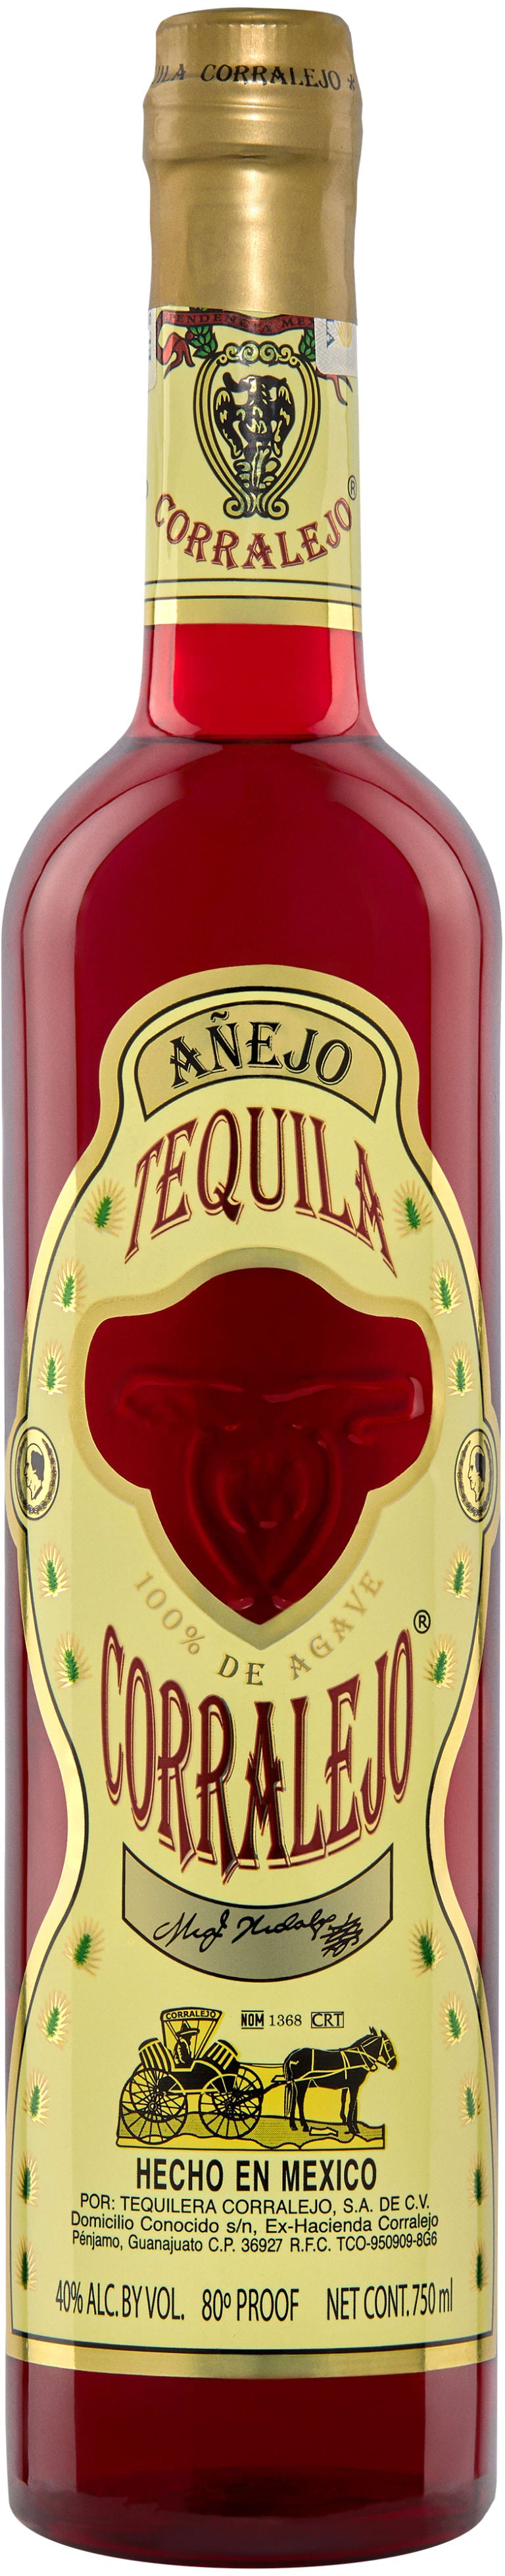 Corralejo Anejo Tequila